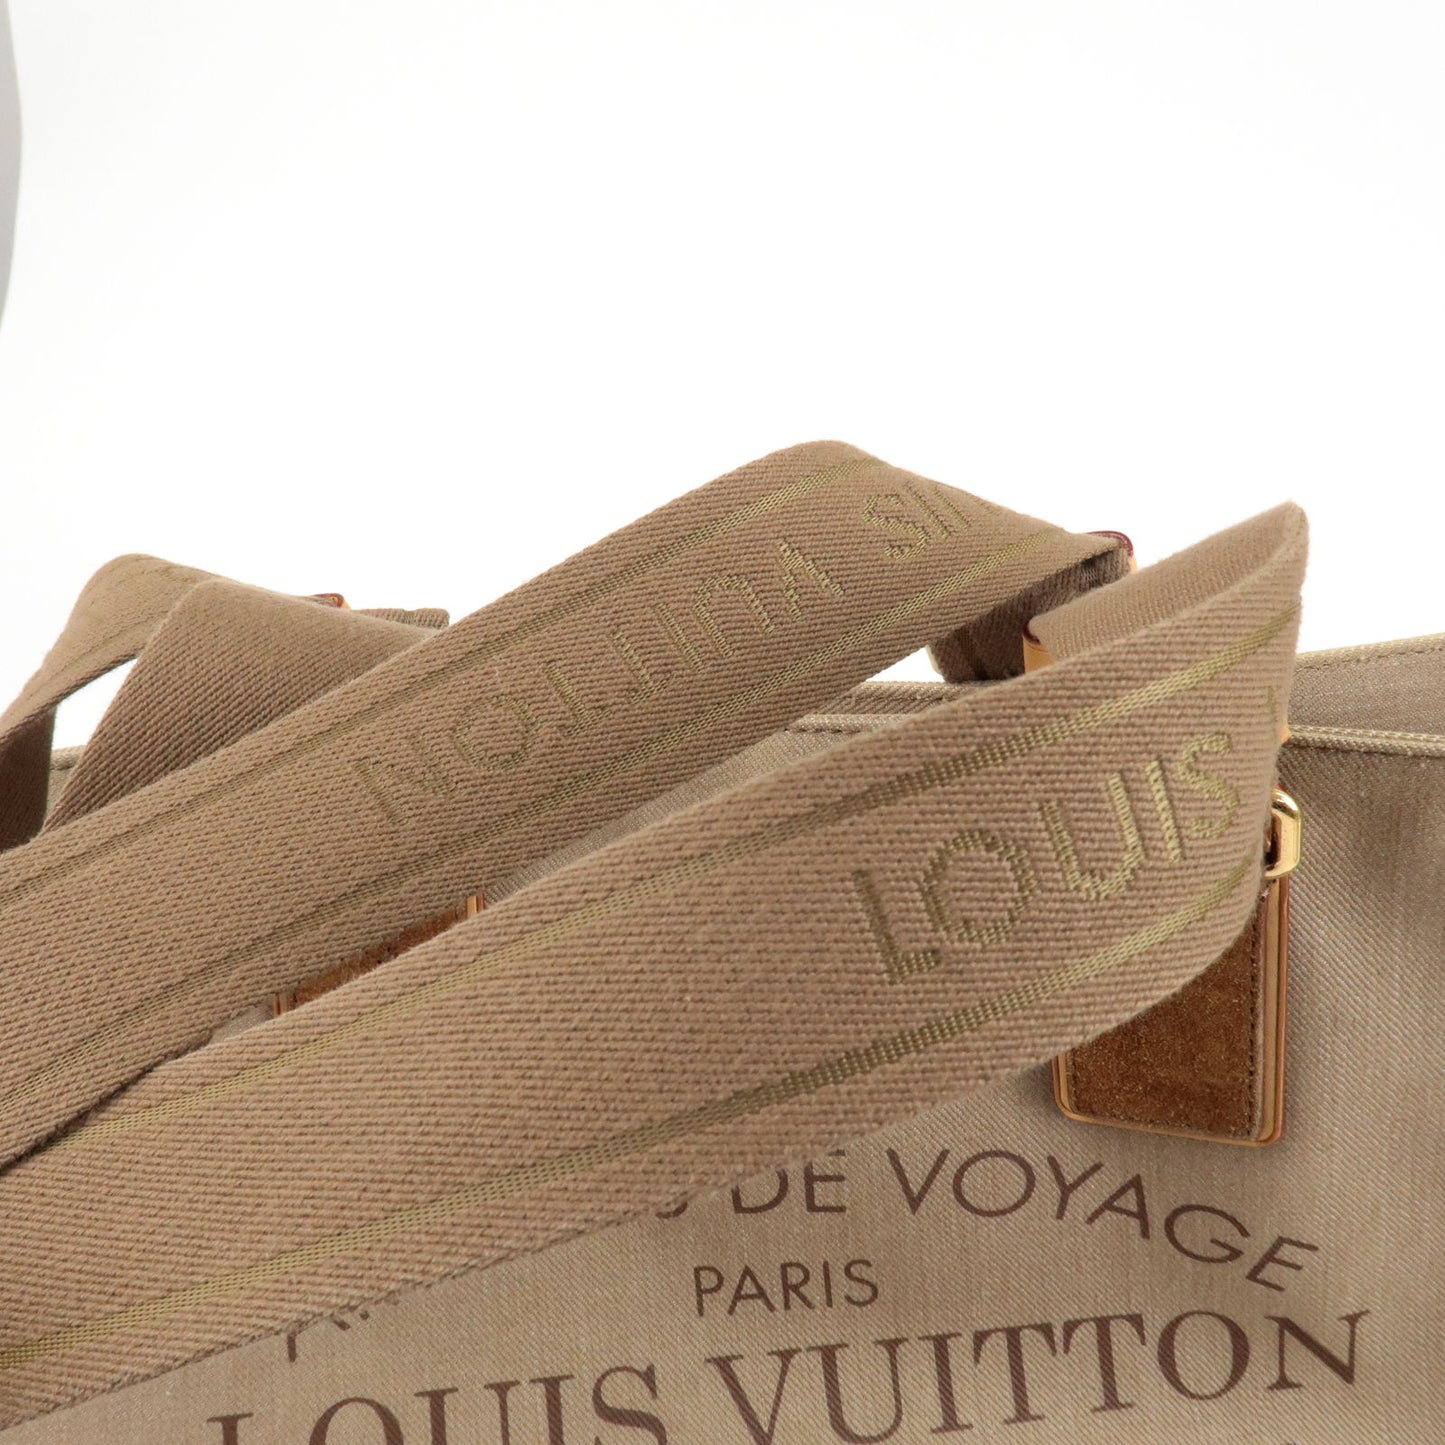 Louis Vuitton Damier Azur Plein Soleil Cabas PM QJBBUGDNWF004